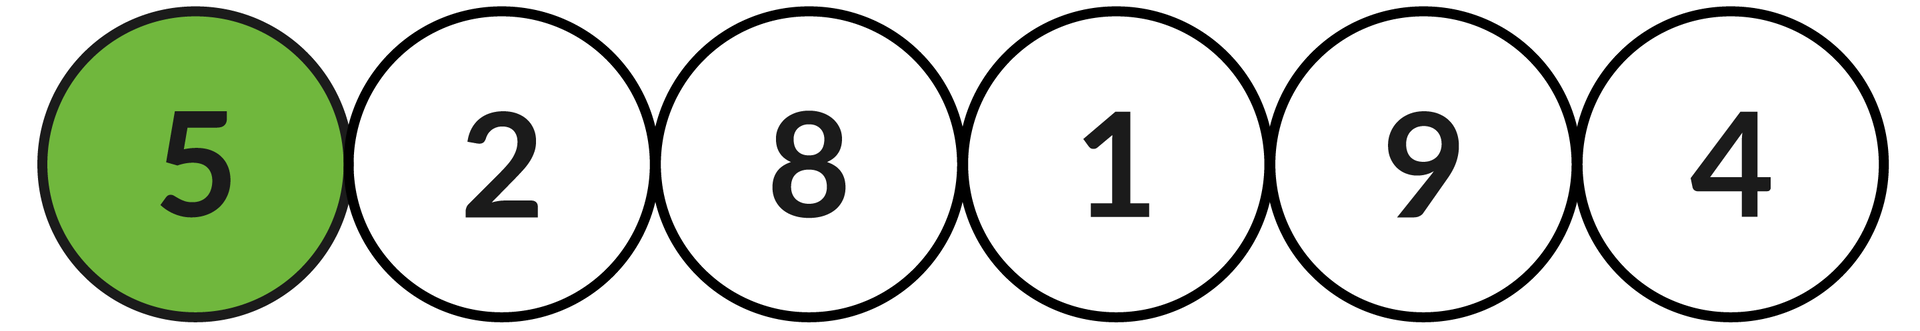 Ilustracja przedstawia sześć okręgów z liczbami: 5, 2, 8, 1, 9, 4.  Zielonym kolorem zaznaczono okrąg z liczbą: 5